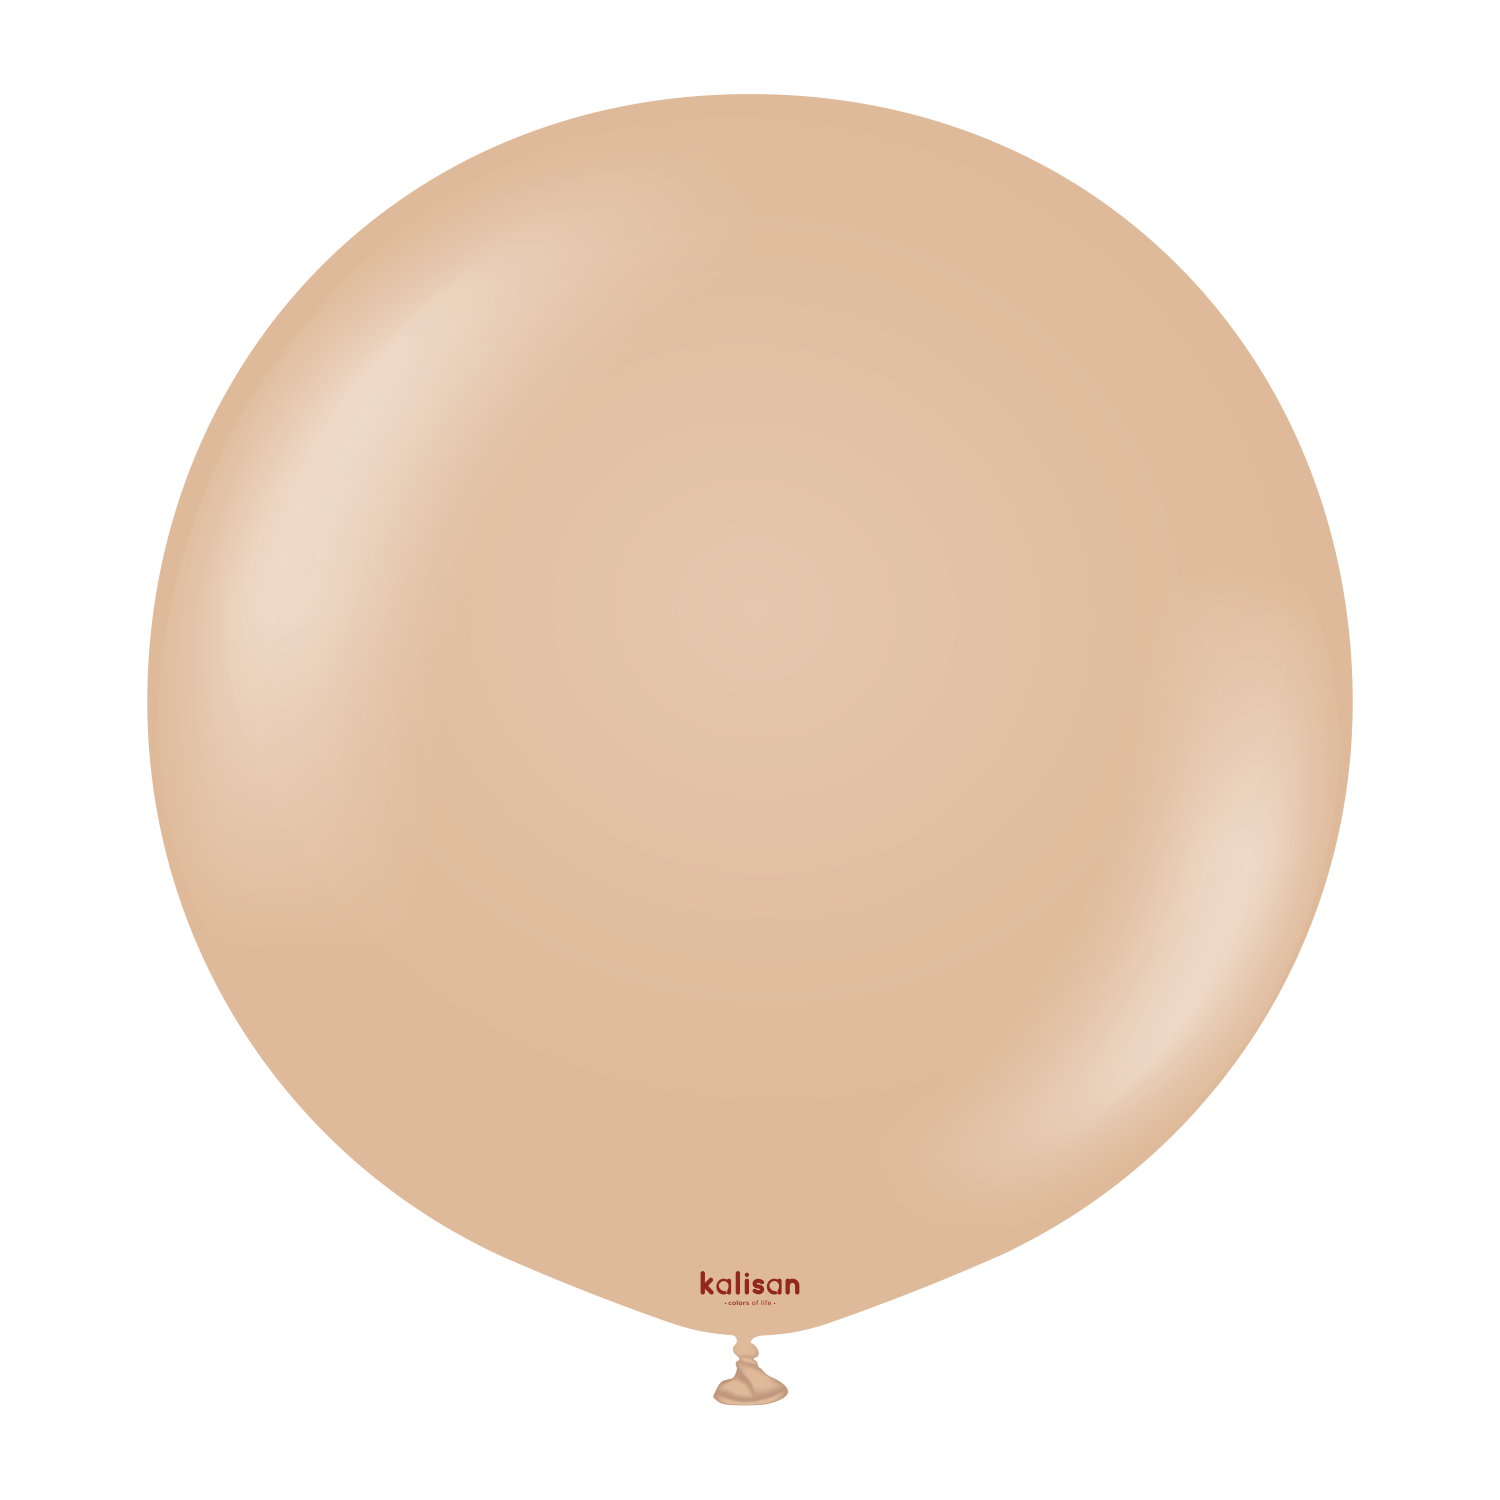 36" Riesenballon Retro Desert Sand (2 Stück)